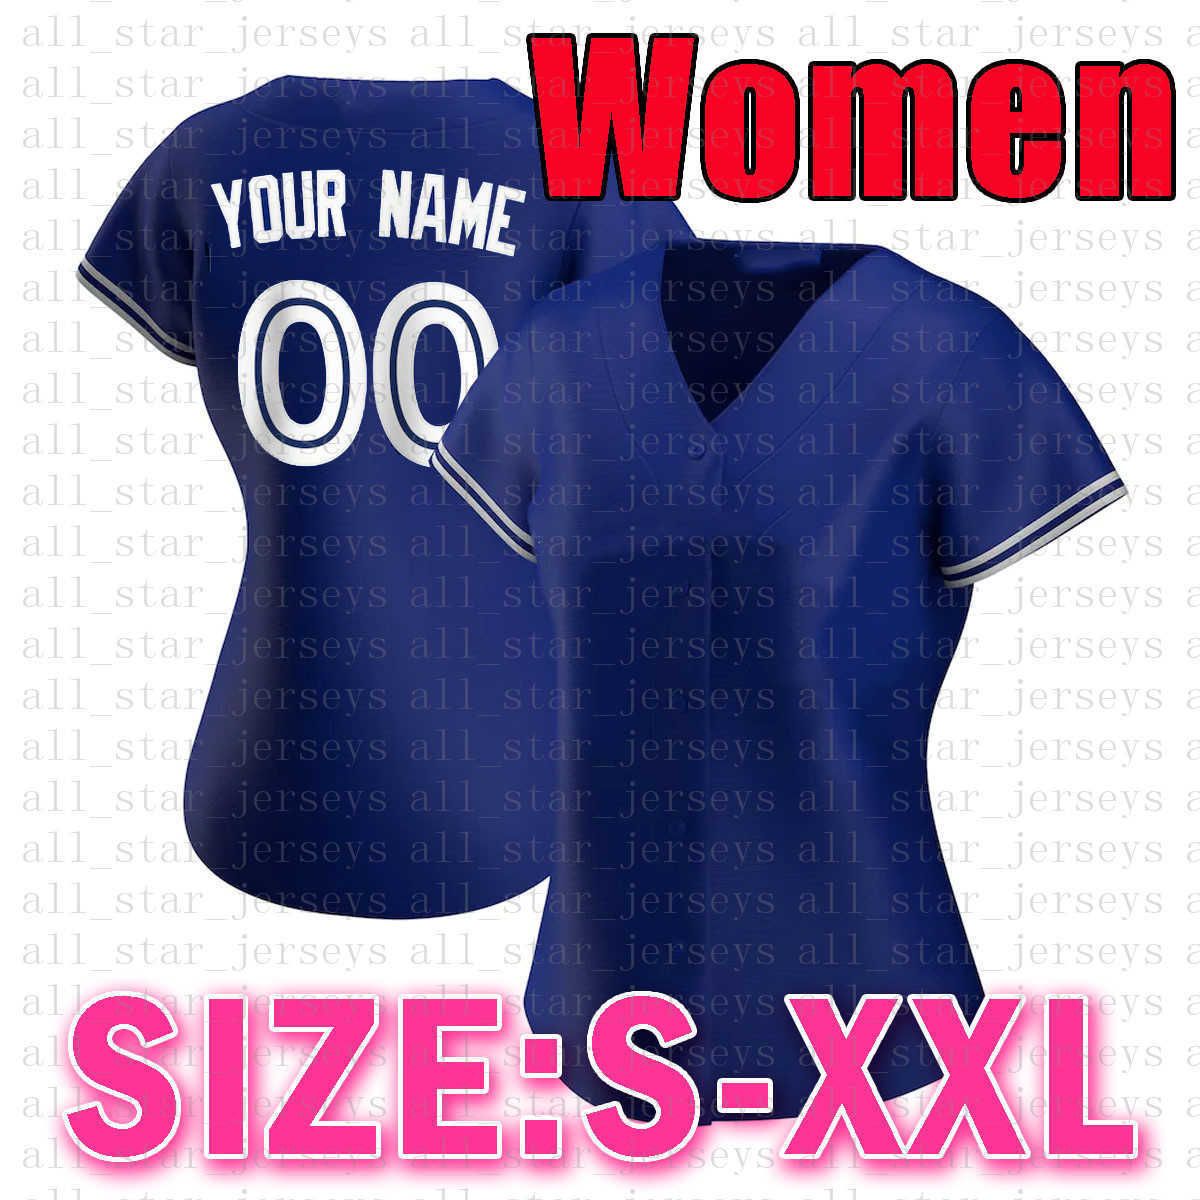 Dimensione delle donne: S-XXL (Lanniao)